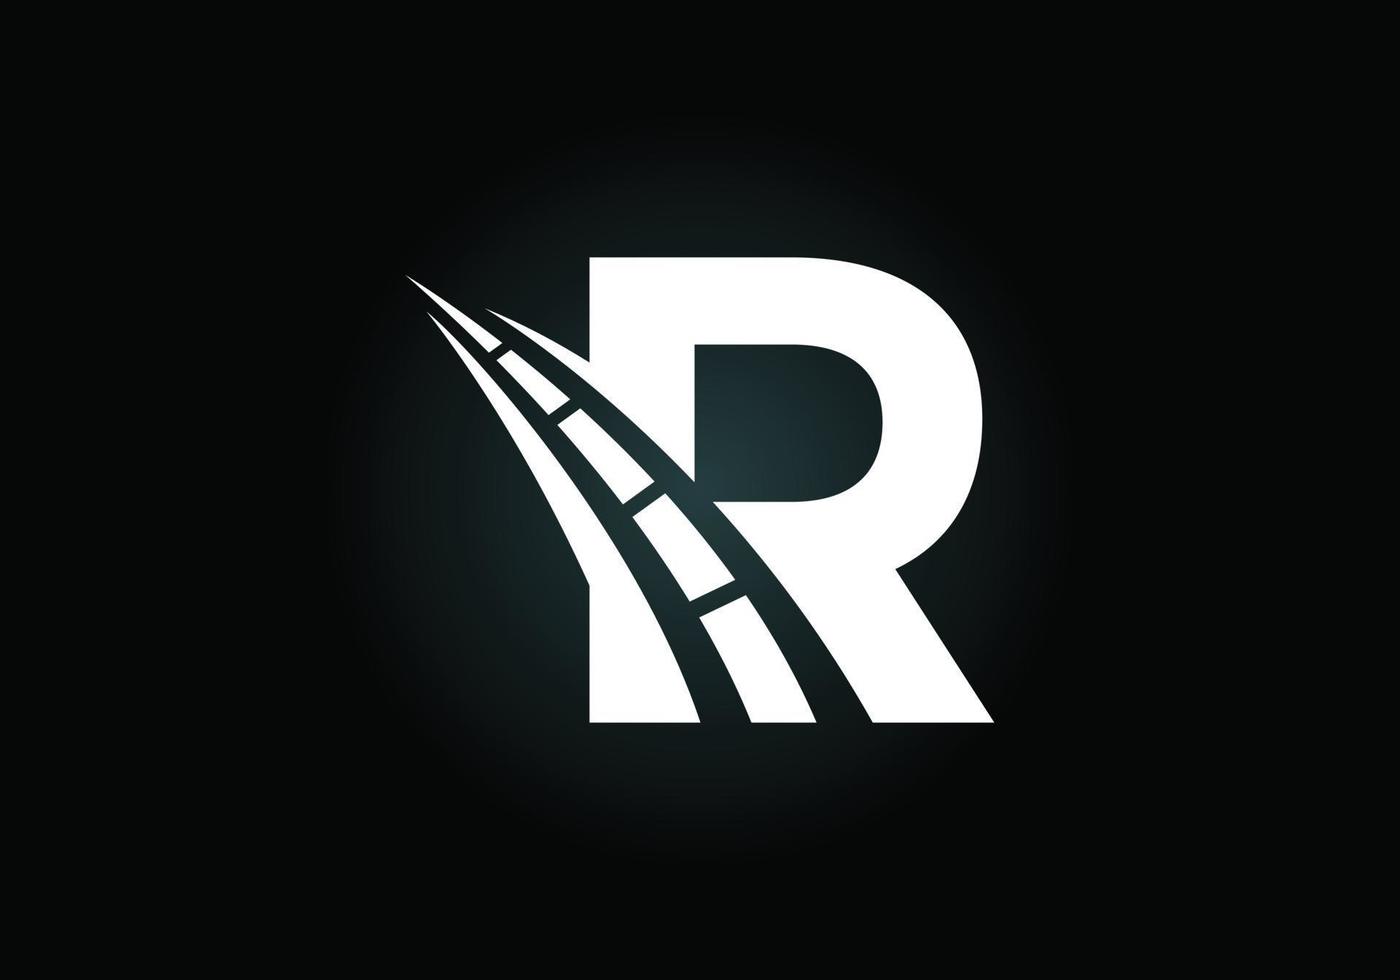 letra r con el logo de la carretera cantando. el concepto de diseño creativo para el mantenimiento y la construcción de carreteras. tema de transporte y tráfico. vector